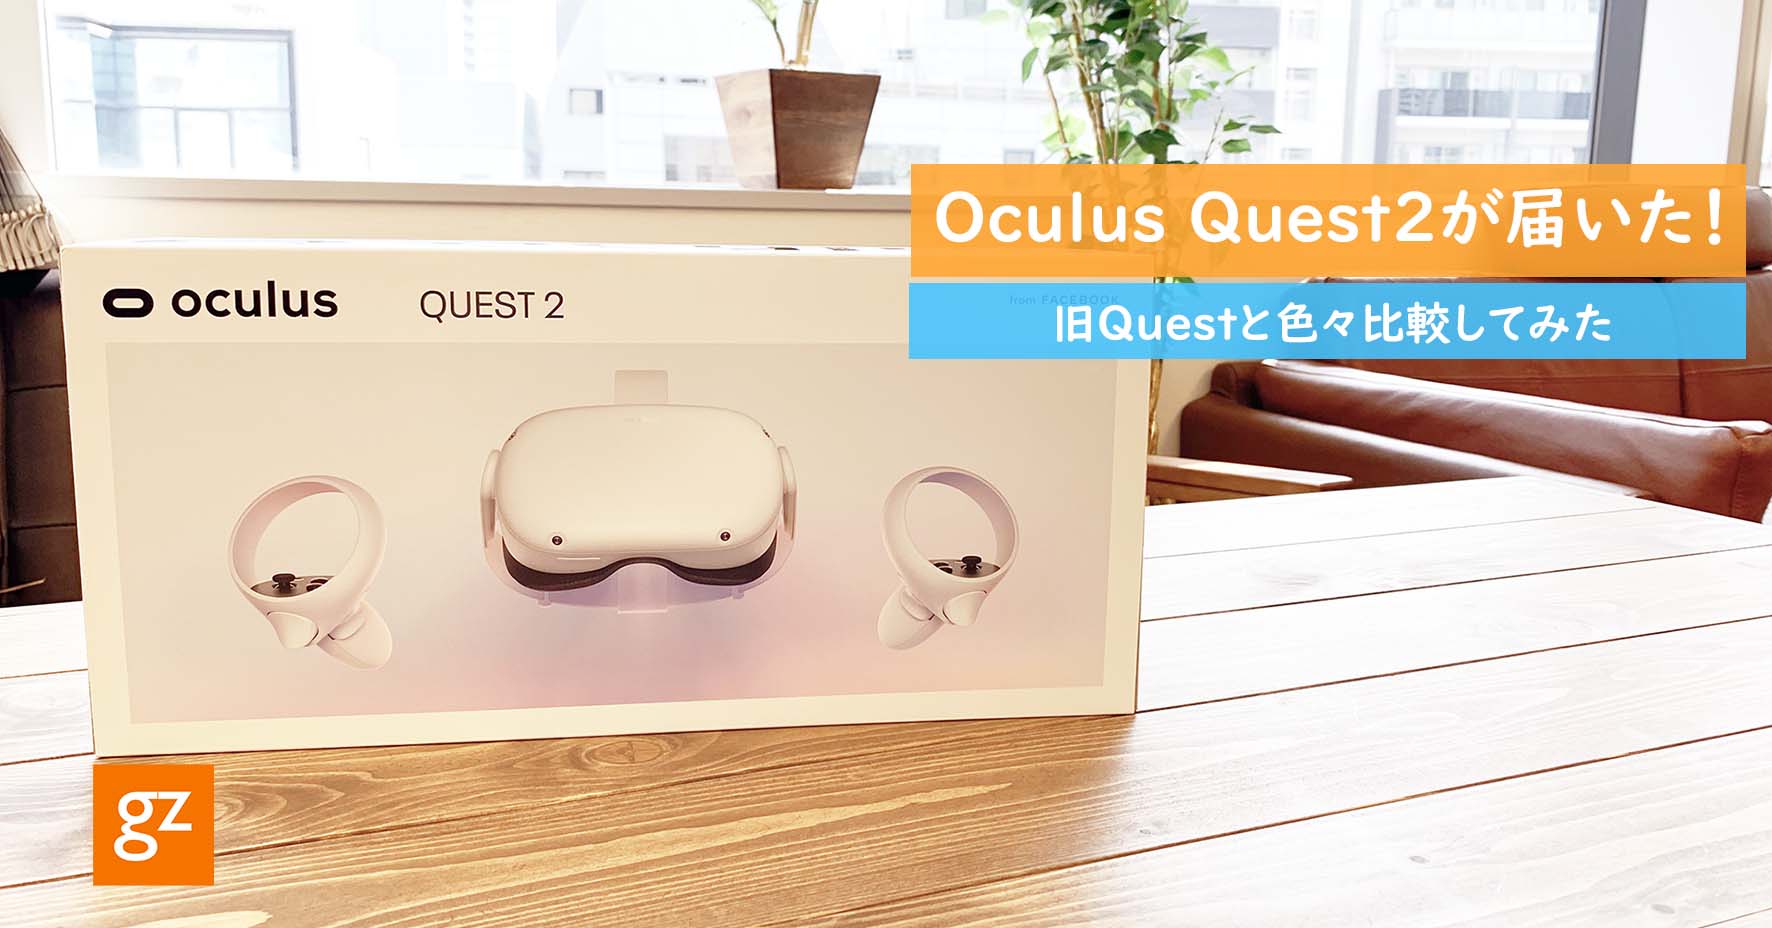 10月13日発売の『Oculus Quest 2』がジーゼに届いた！のサムネイル画像